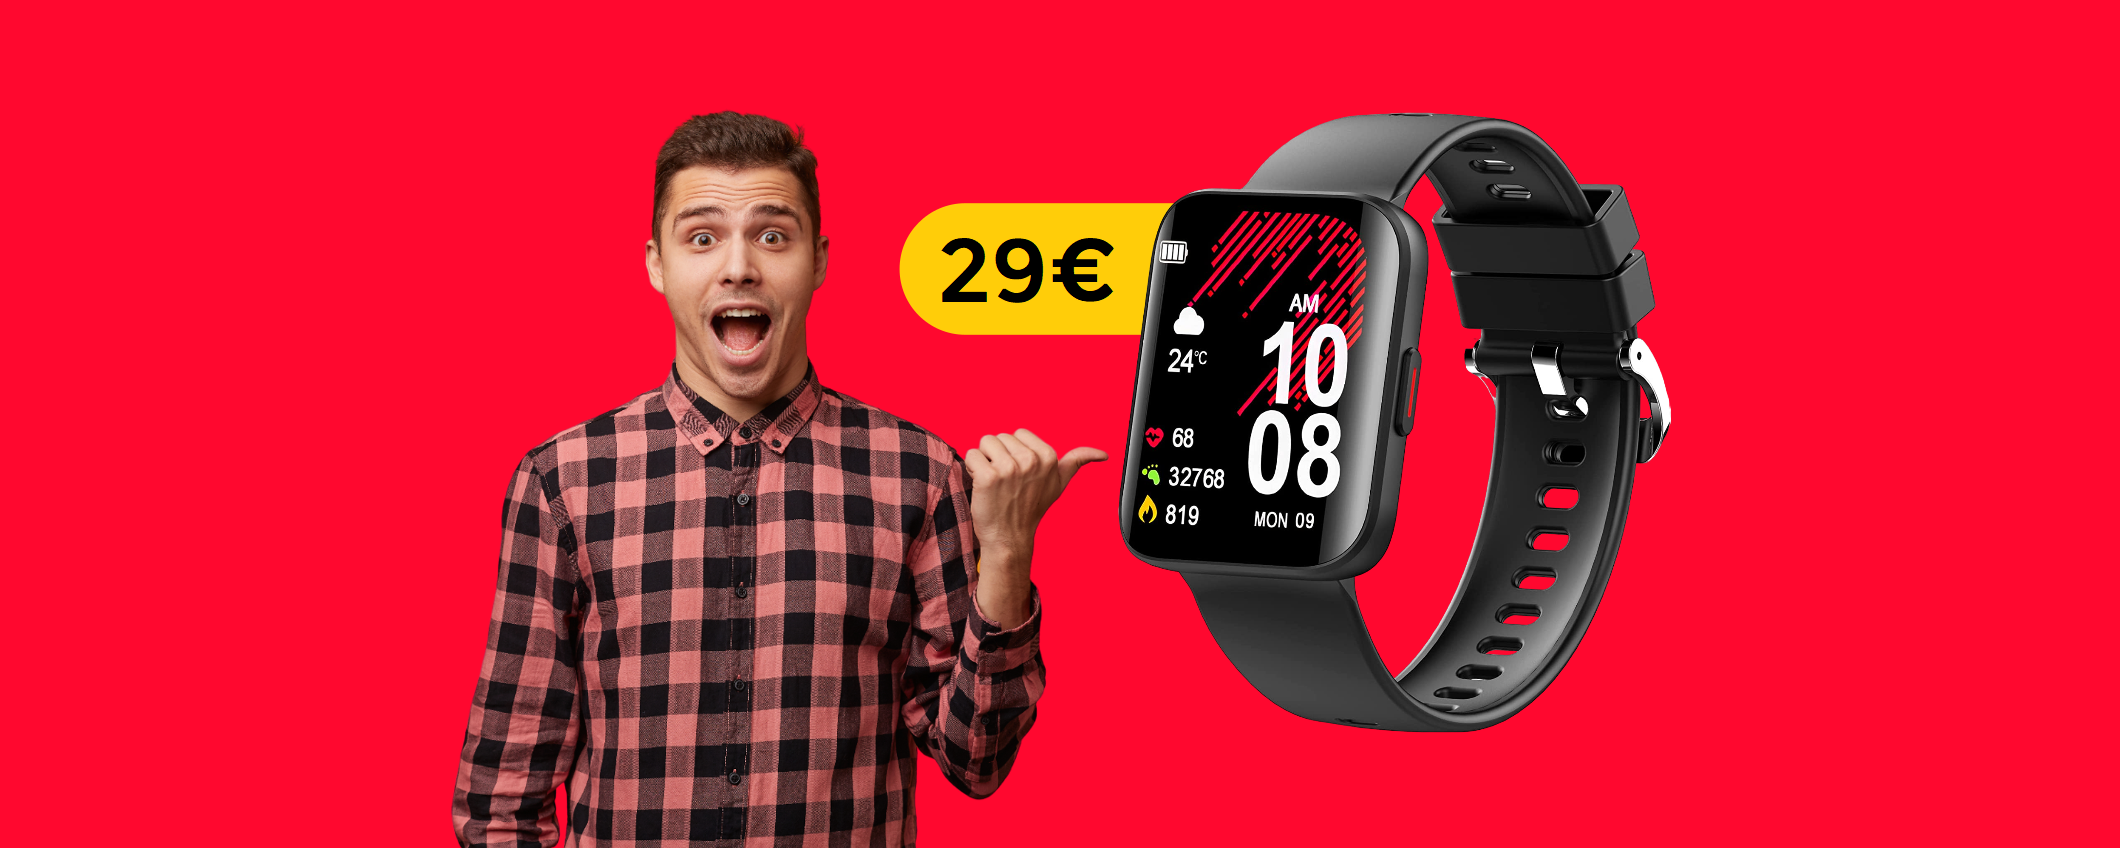 Smartwatch impermeabile a cui non manca nulla: già tuo con 29€